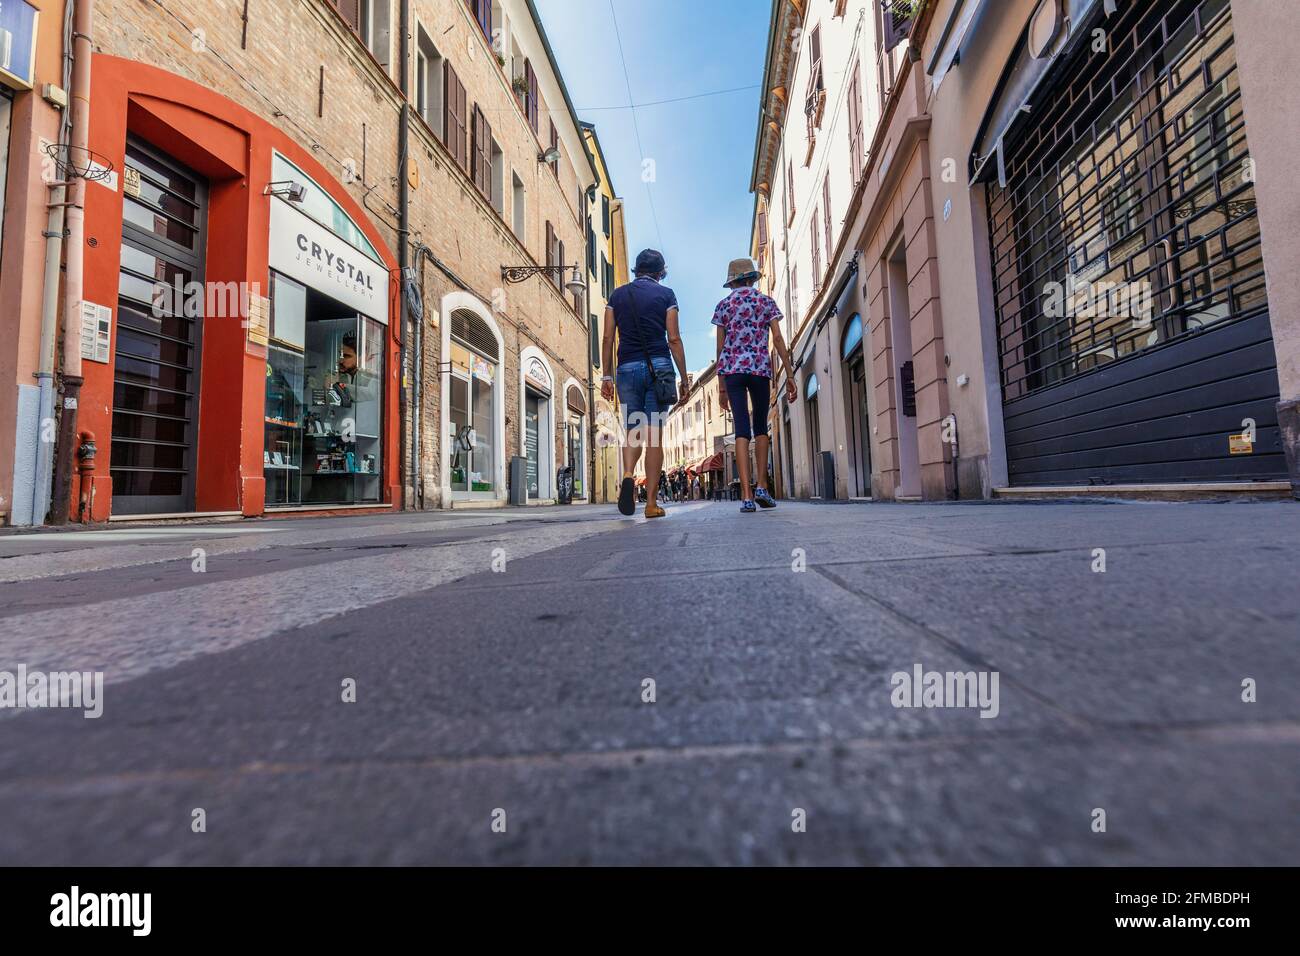 i turisti passeggiano per le strade del centro storico di ferrara, emilia romagna, italia, europa Foto Stock